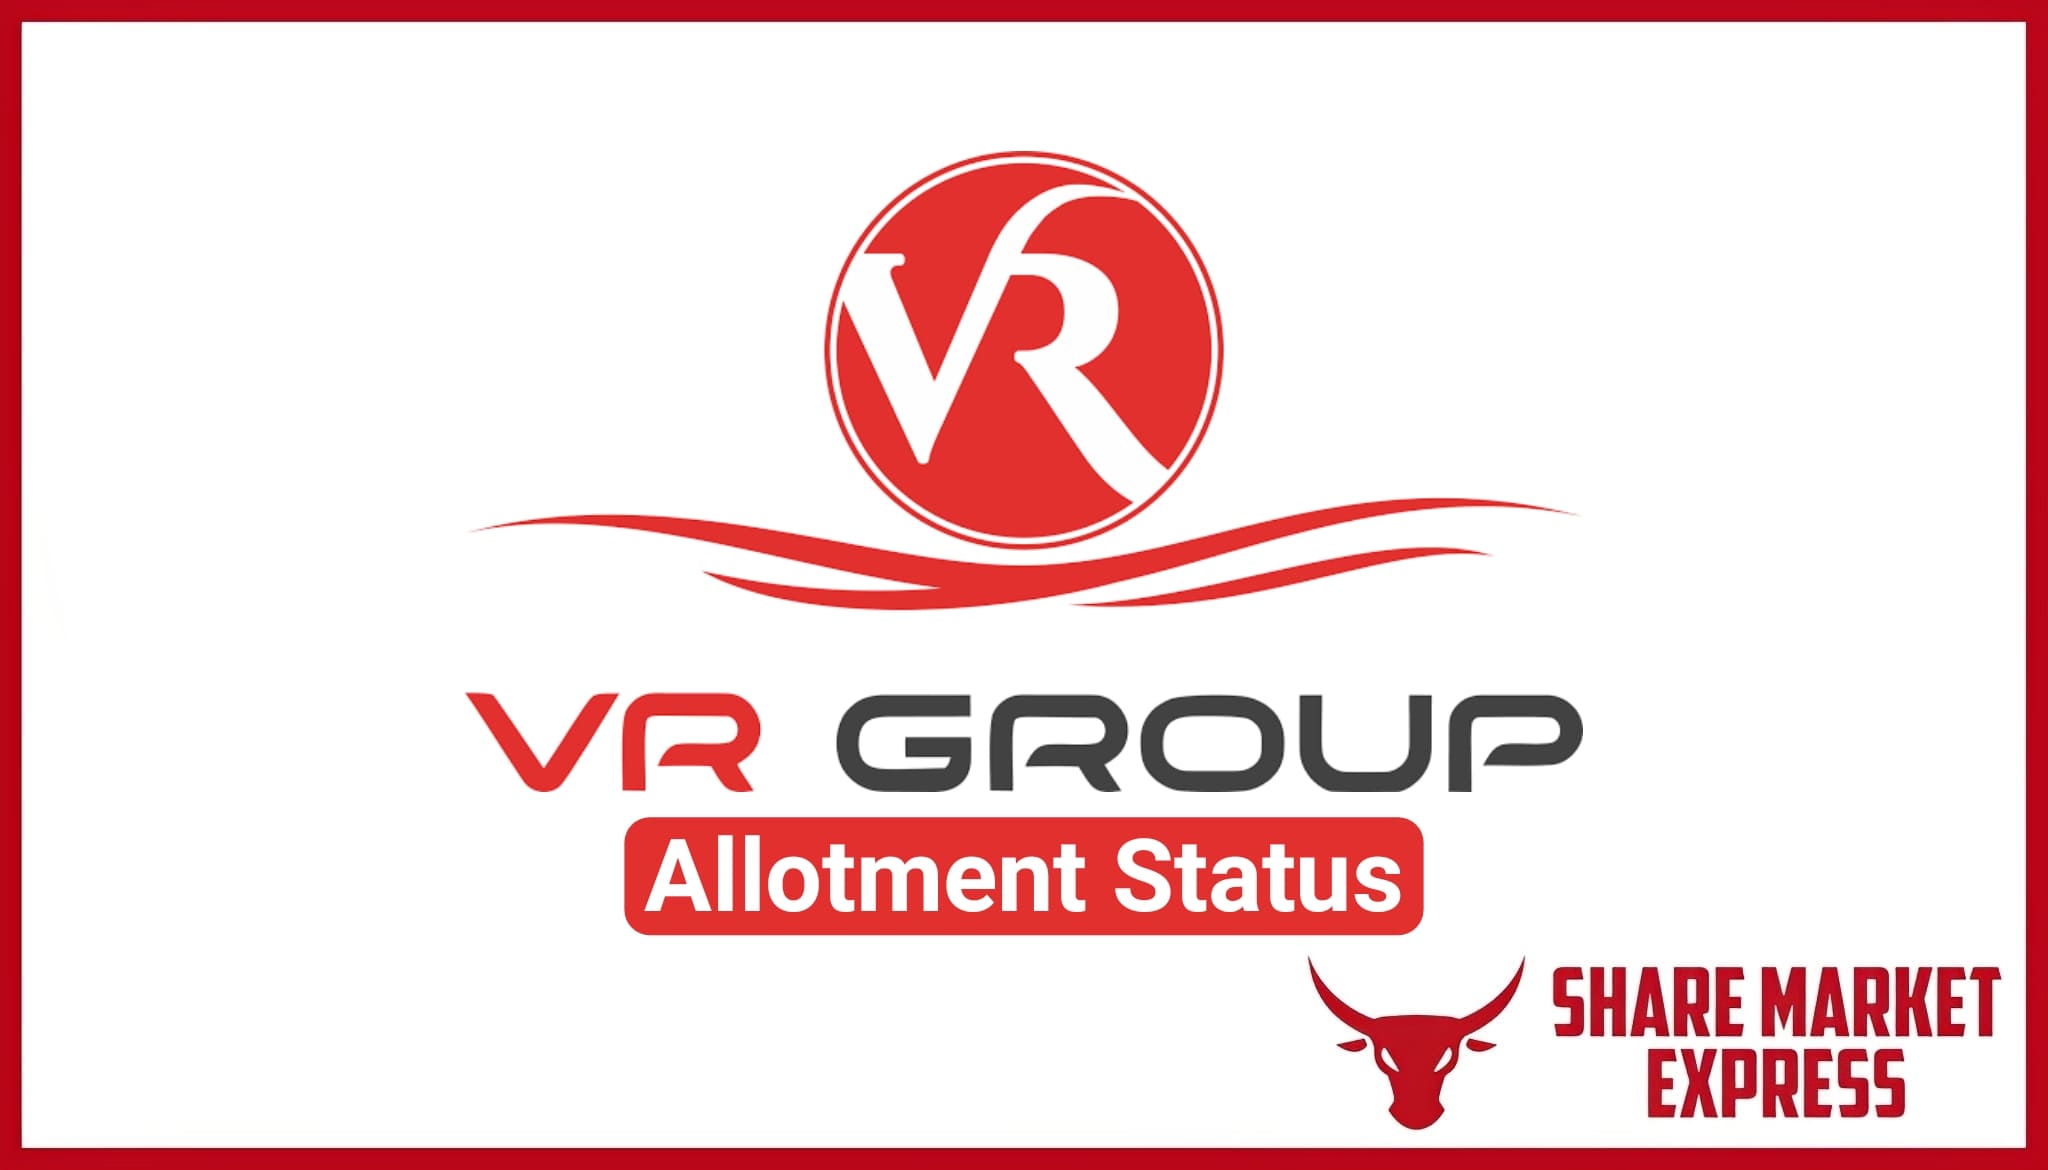 V R Infraspace IPO allotment status-VR Infraspace IPO allotment status-VR Infraspace Limited IPO allotment status-VR Infraspace Limited IPO allotment status